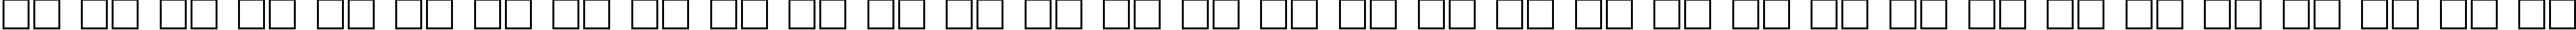 Пример написания русского алфавита шрифтом Proun Bold